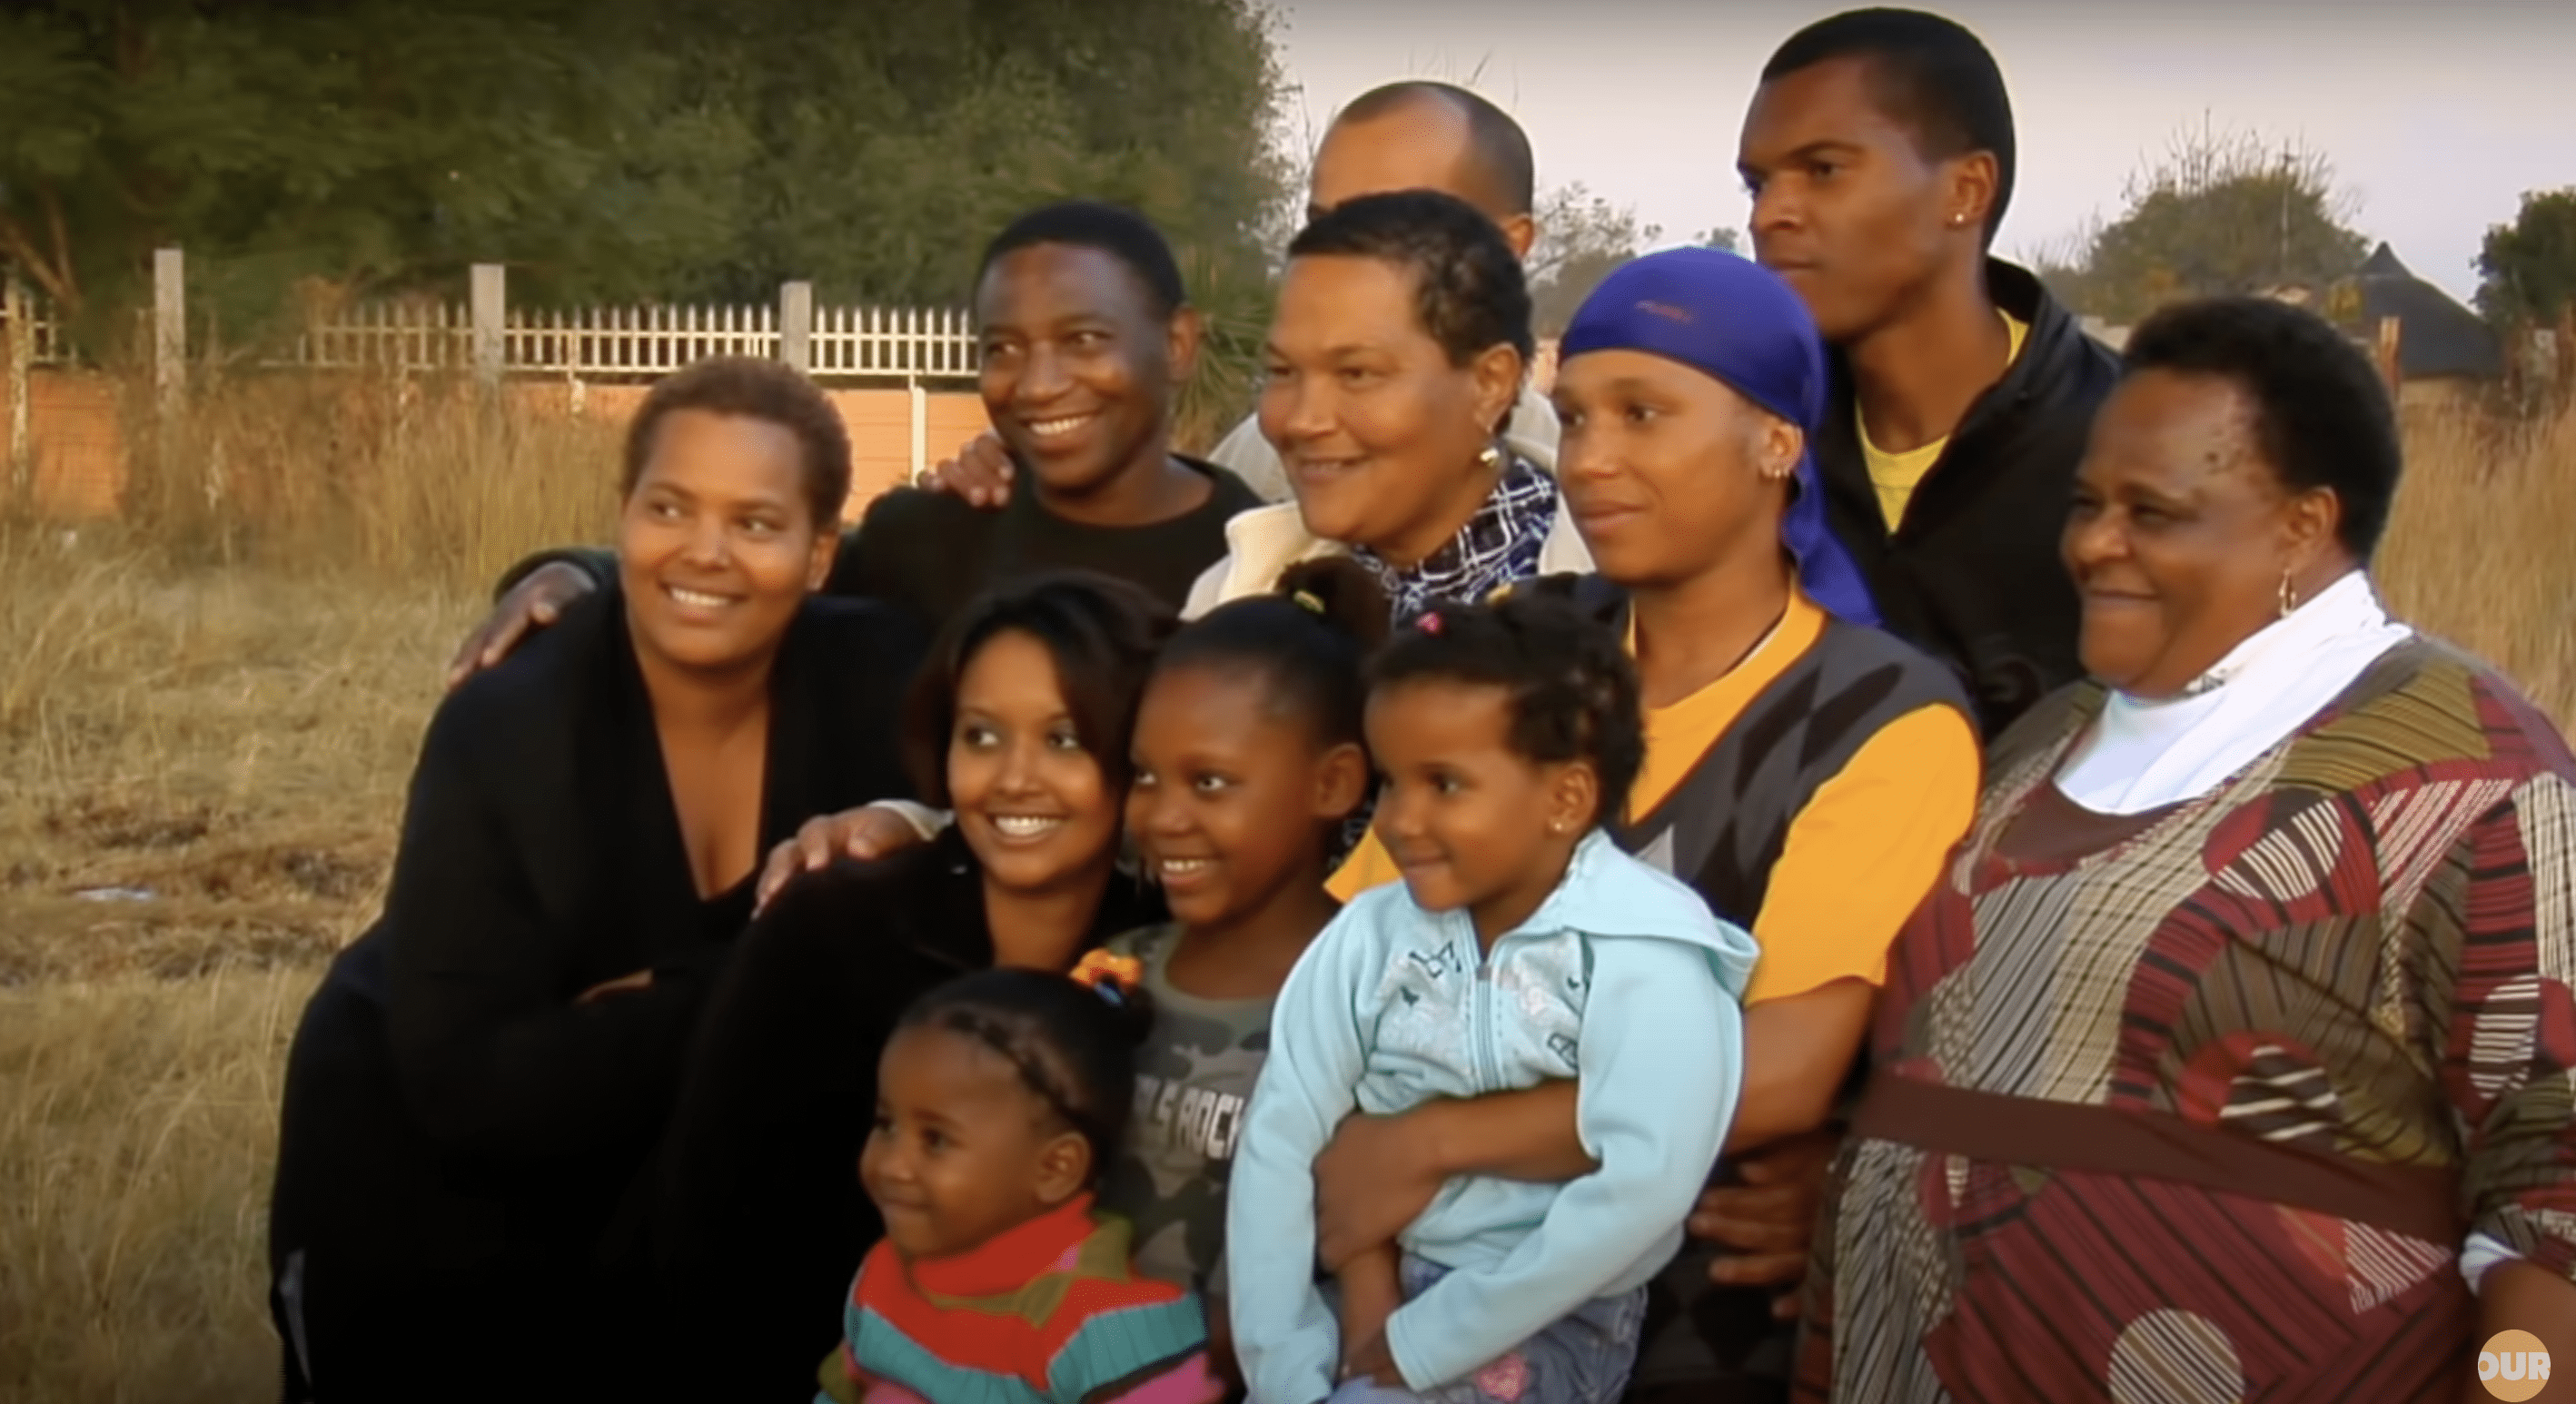 Sandra mit ihrer schwarzen Familie abgebildet. | Quelle: YouTube.com/Our Life